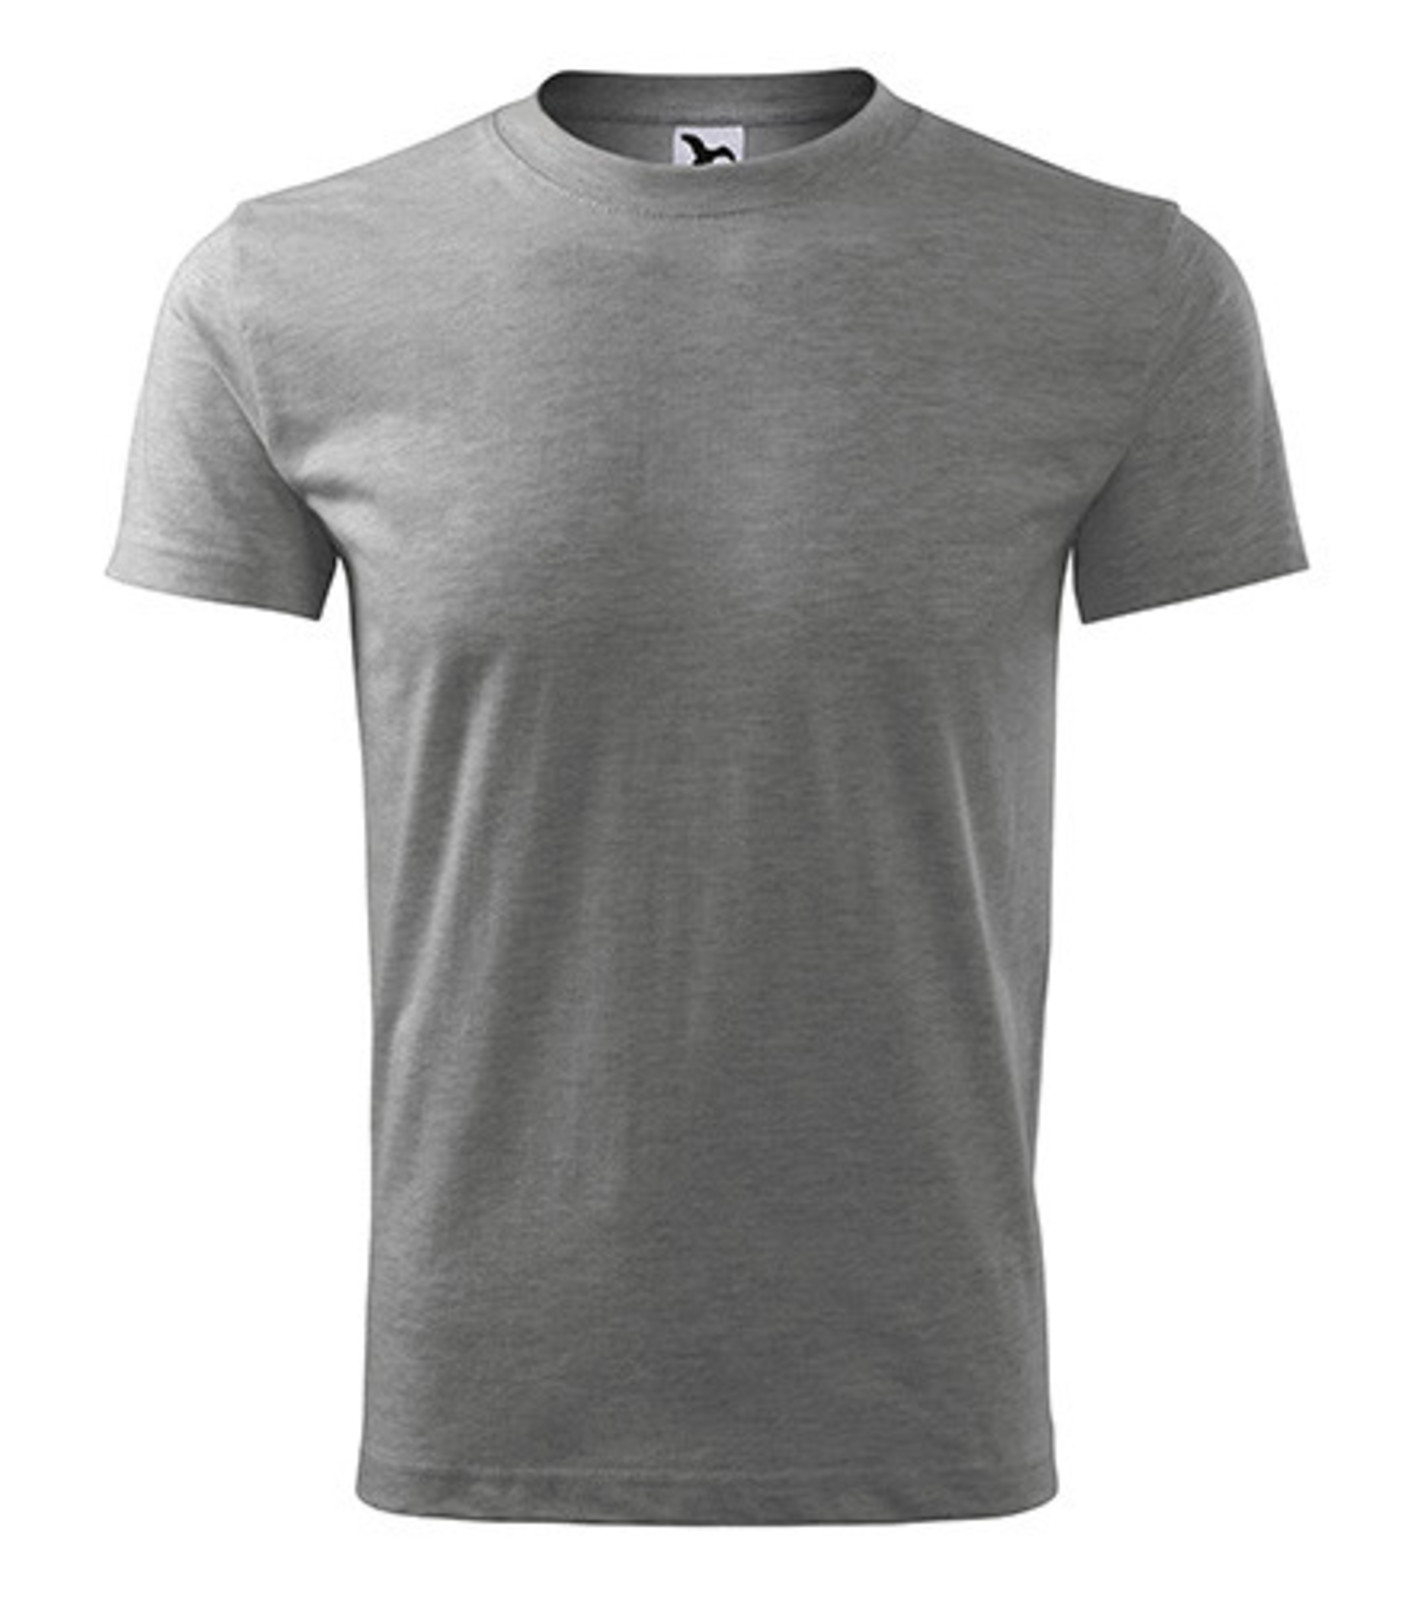 Pánske tričko Adler Classic New 132 - veľkosť: XL, farba: tmavosivý melír